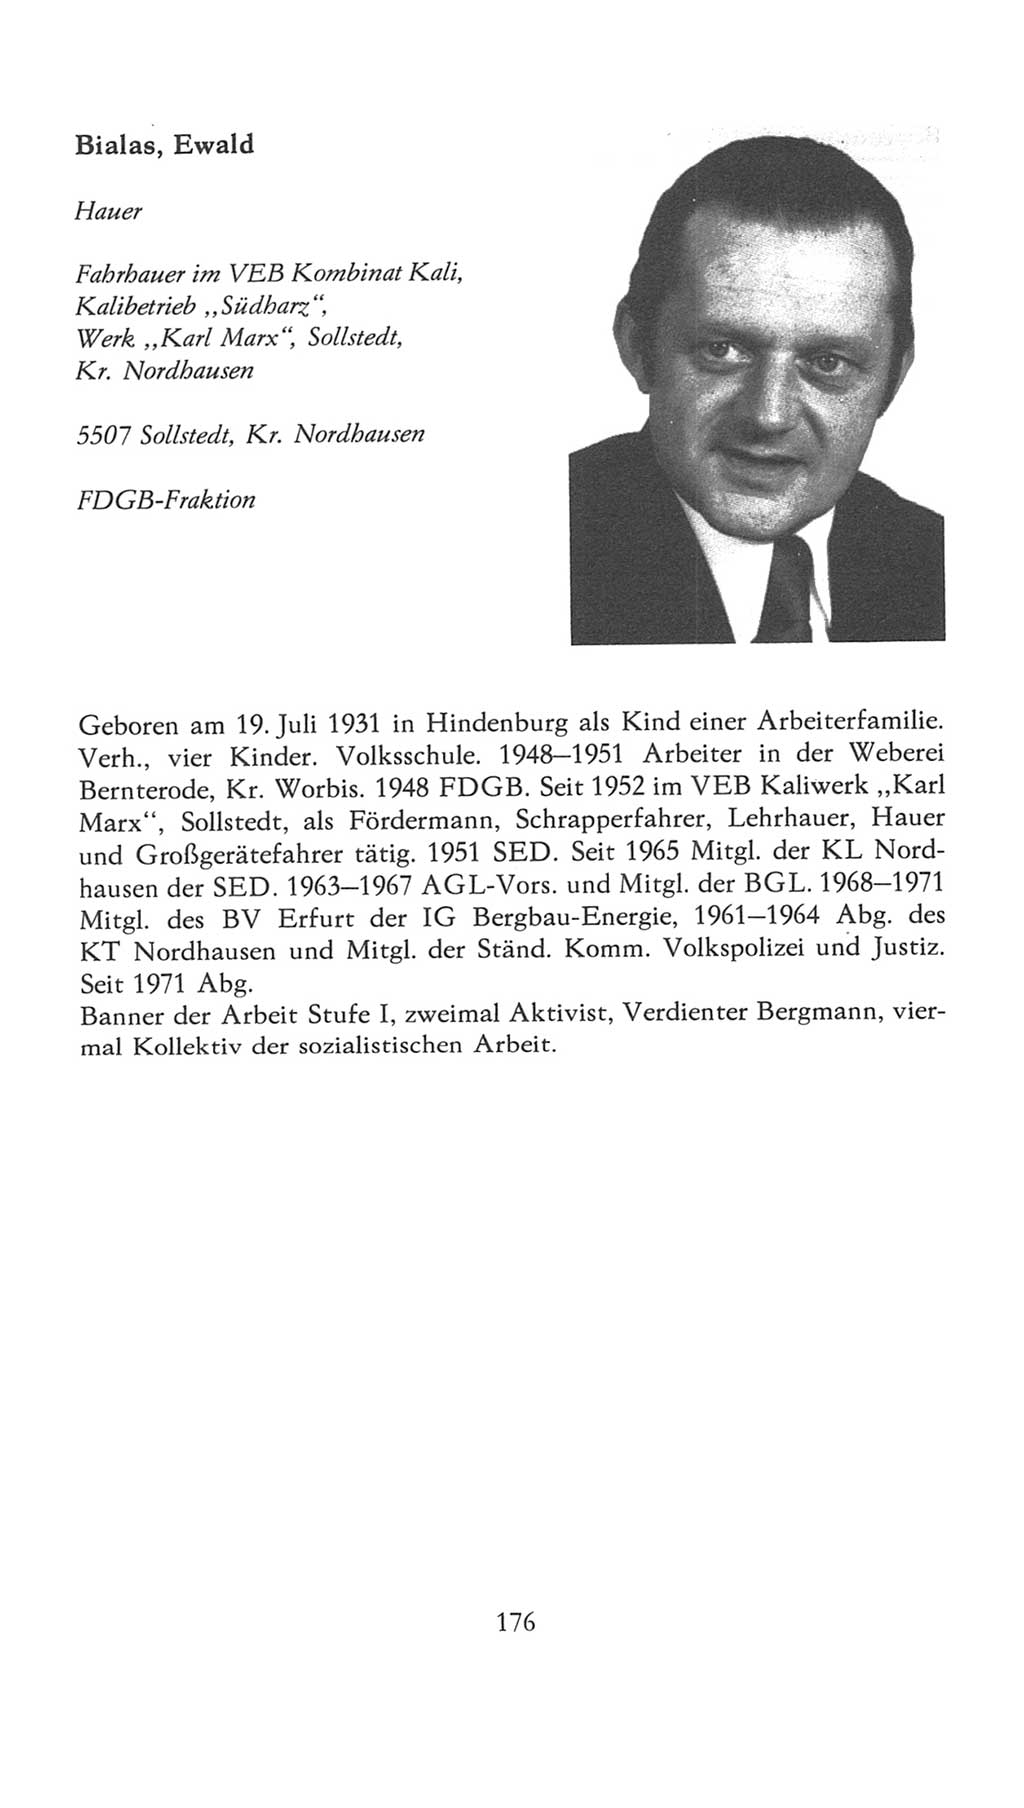 Volkskammer (VK) der Deutschen Demokratischen Republik (DDR), 7. Wahlperiode 1976-1981, Seite 176 (VK. DDR 7. WP. 1976-1981, S. 176)